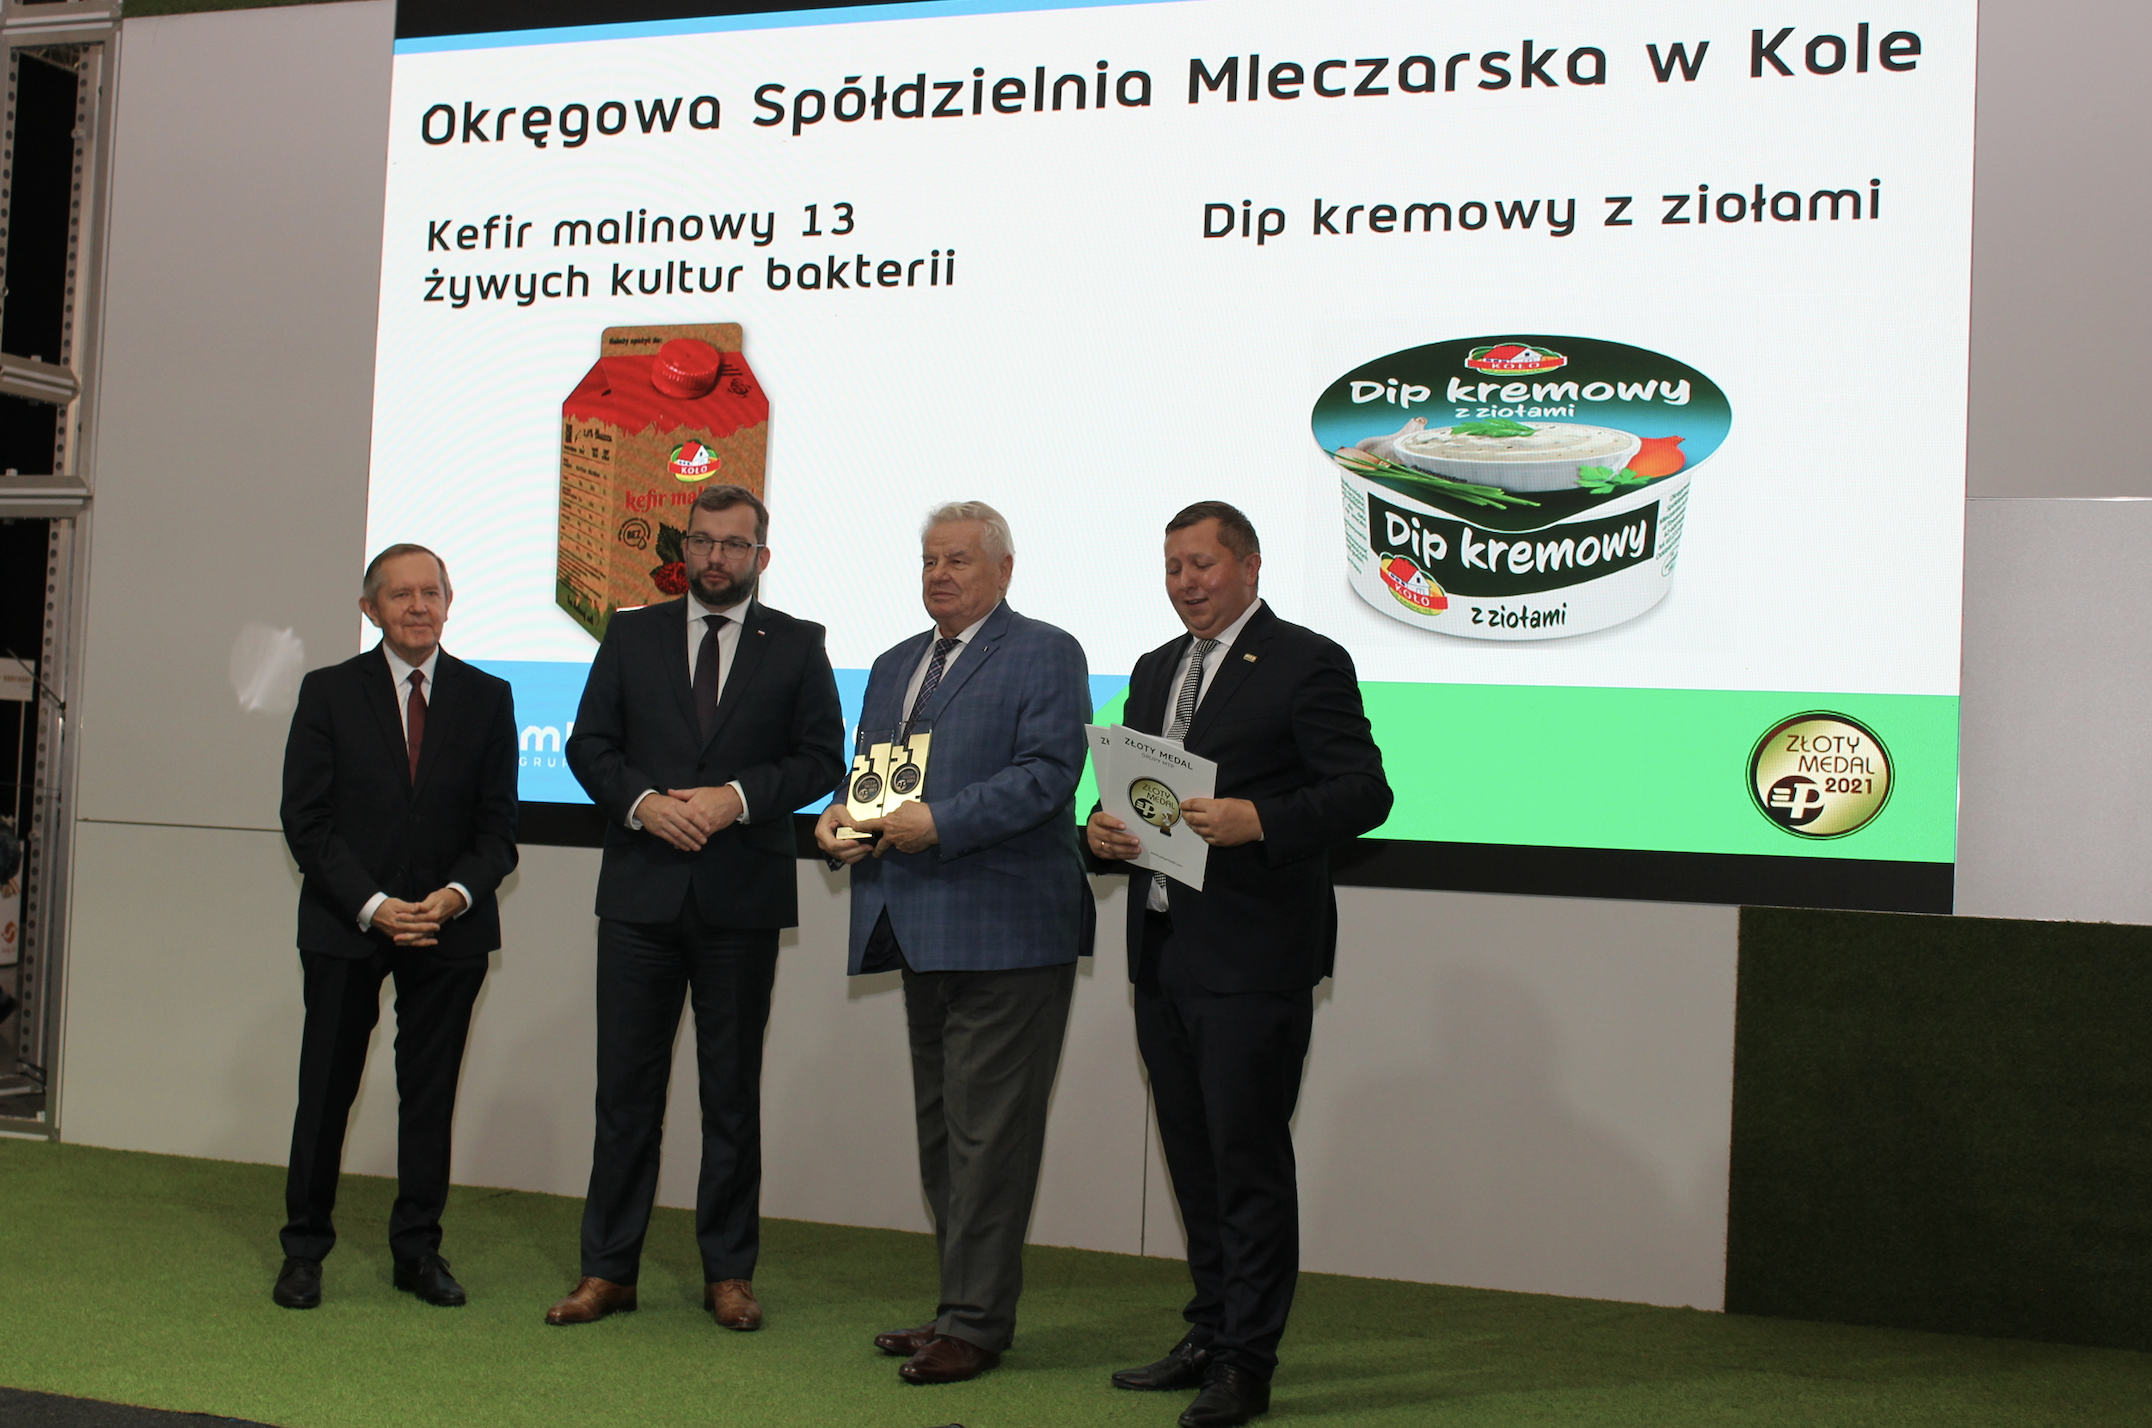 Czesław Cieślak, prezes OSM Koło, odebrał na Polagrze Food dwa Złote Medale MTP dla swojej spółdzielni